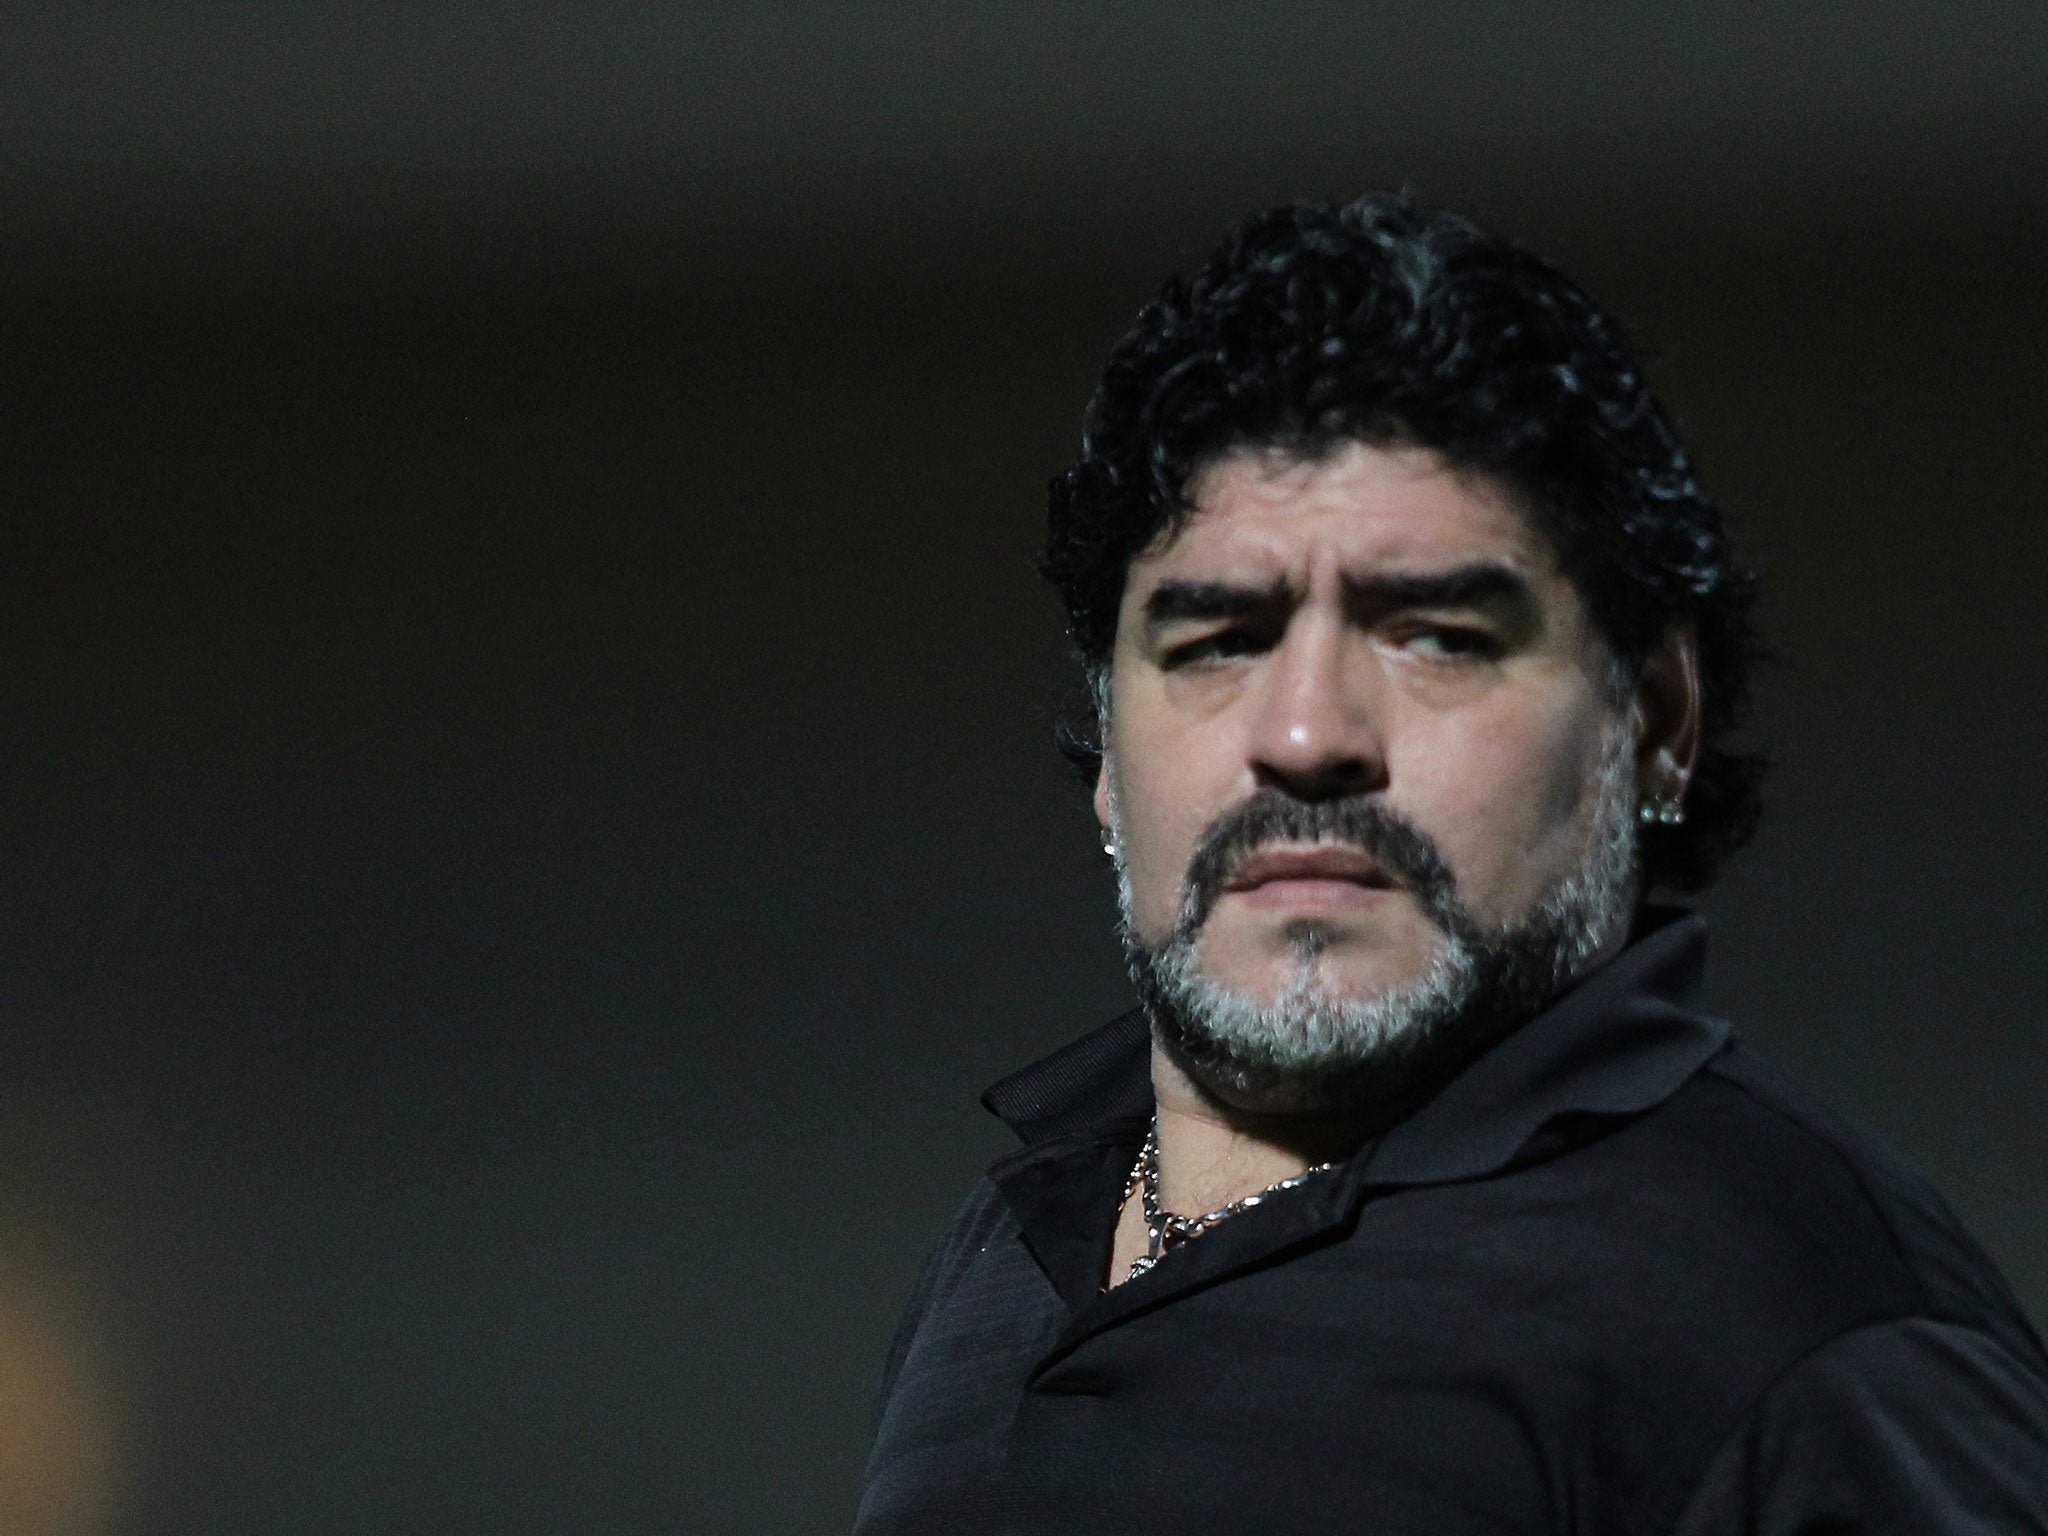 Maradona has claimed that Fifa officials turned him away from the Maracana